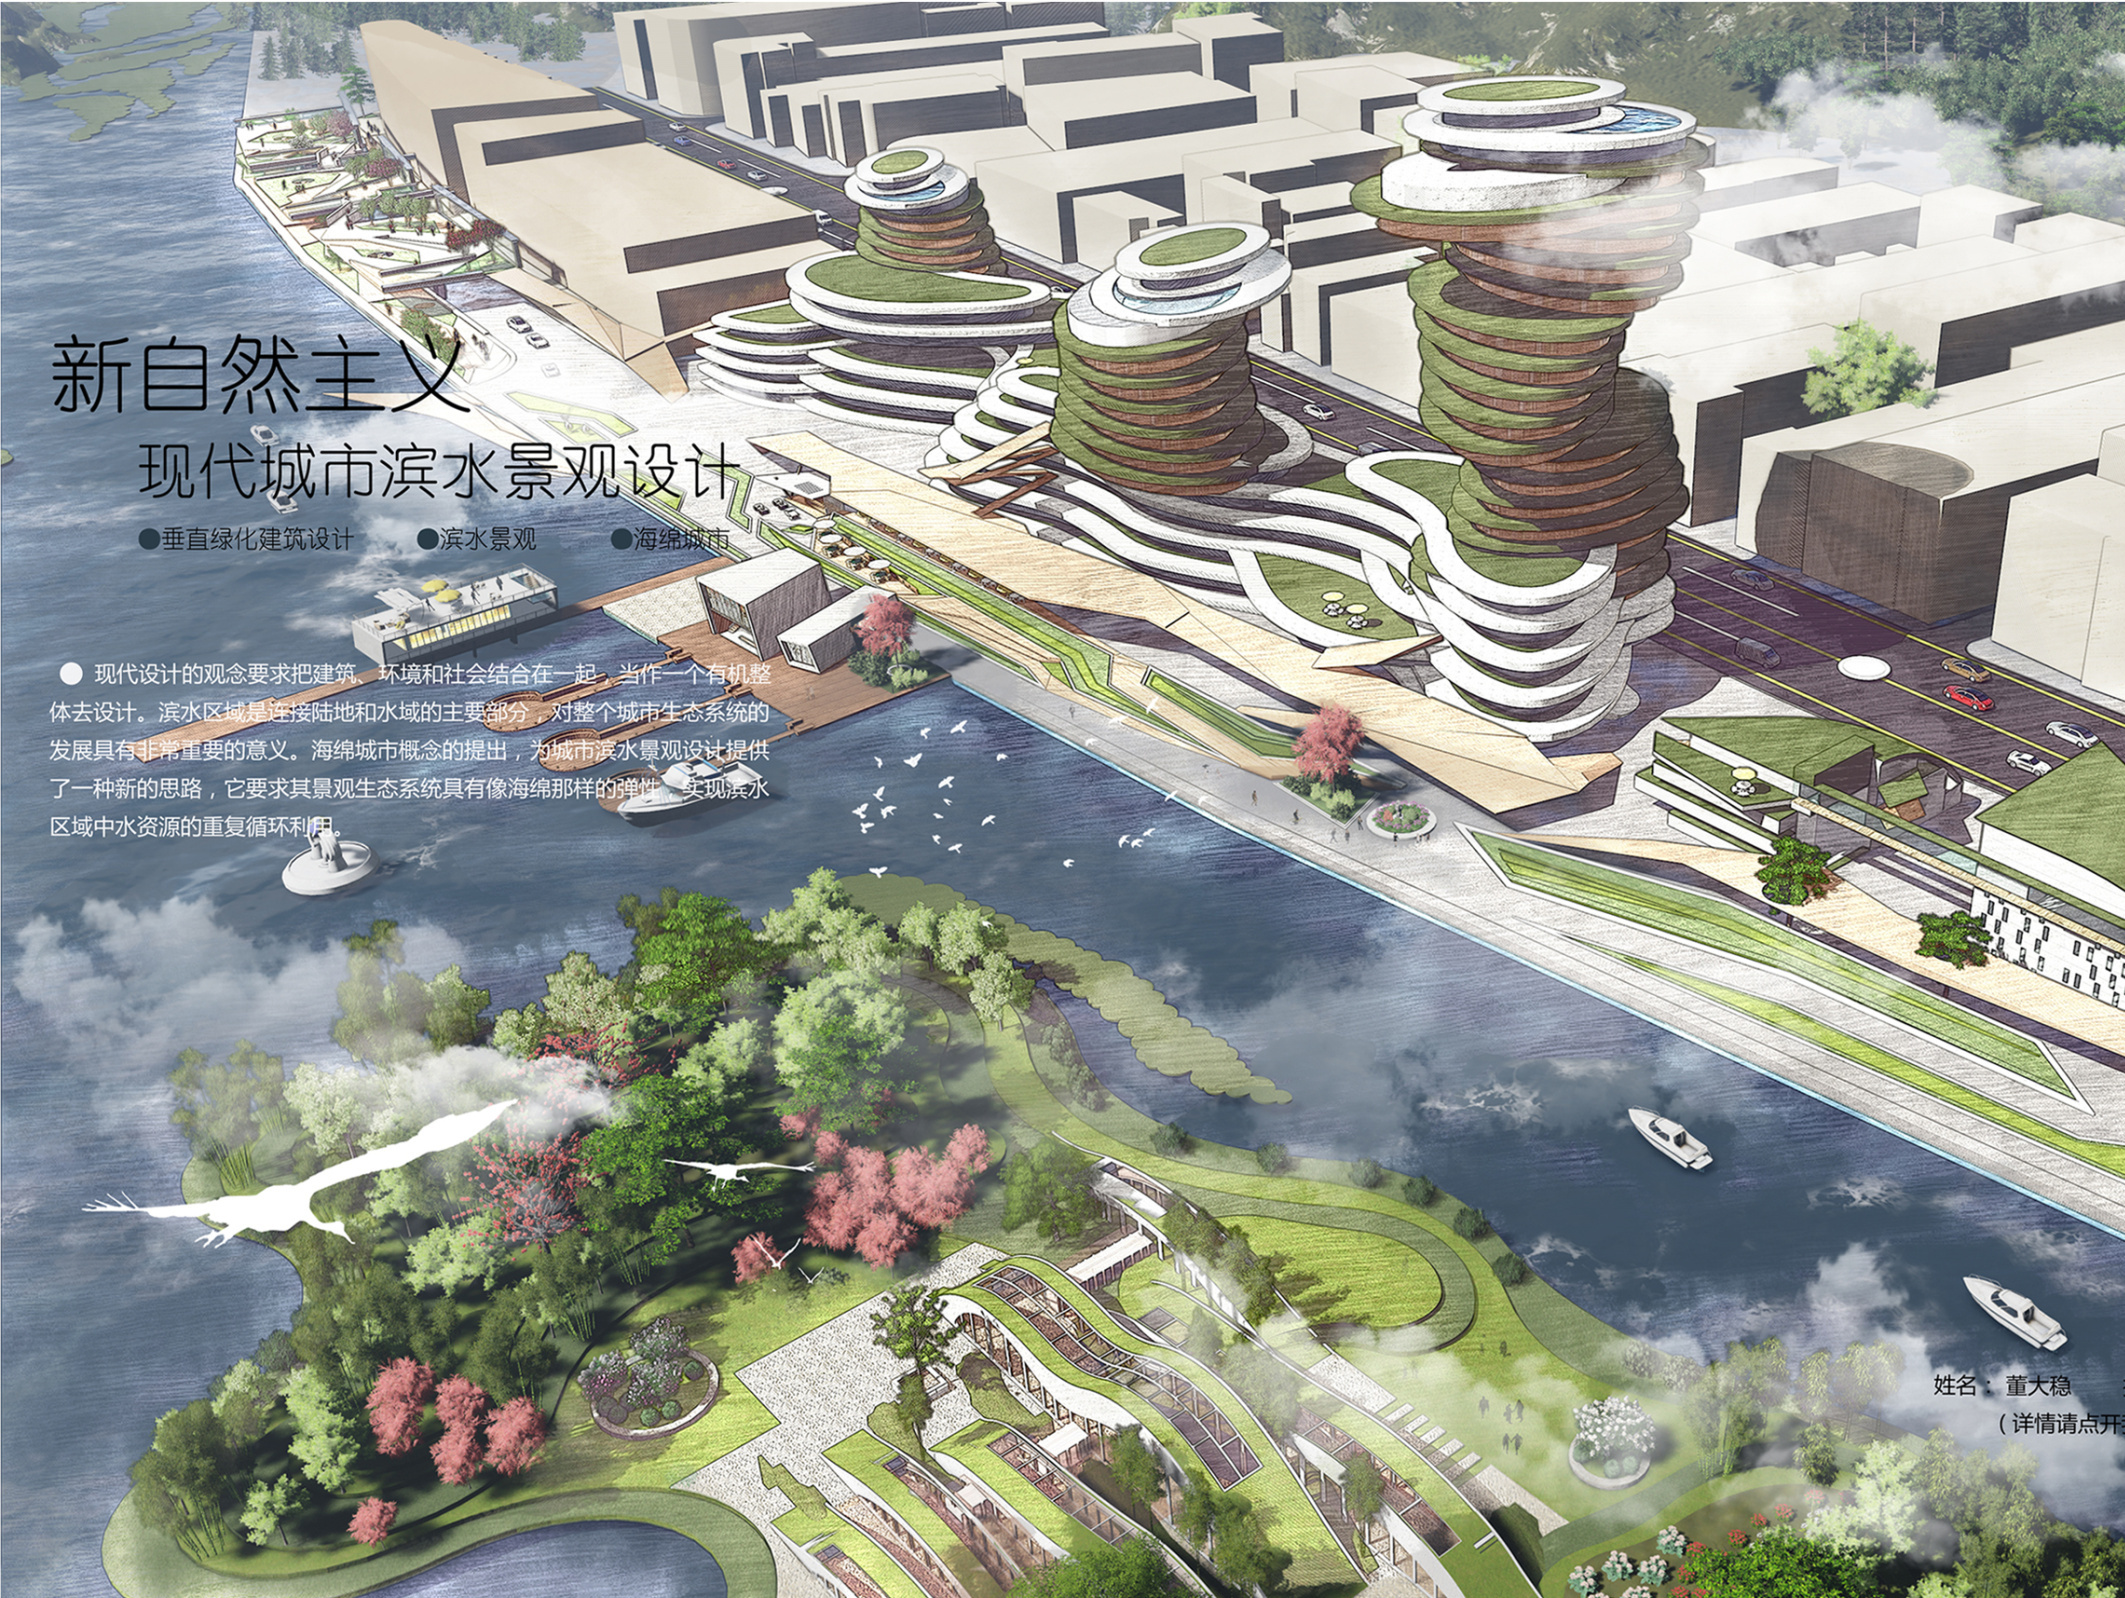 浅析现代城市新自然滨水景观设计